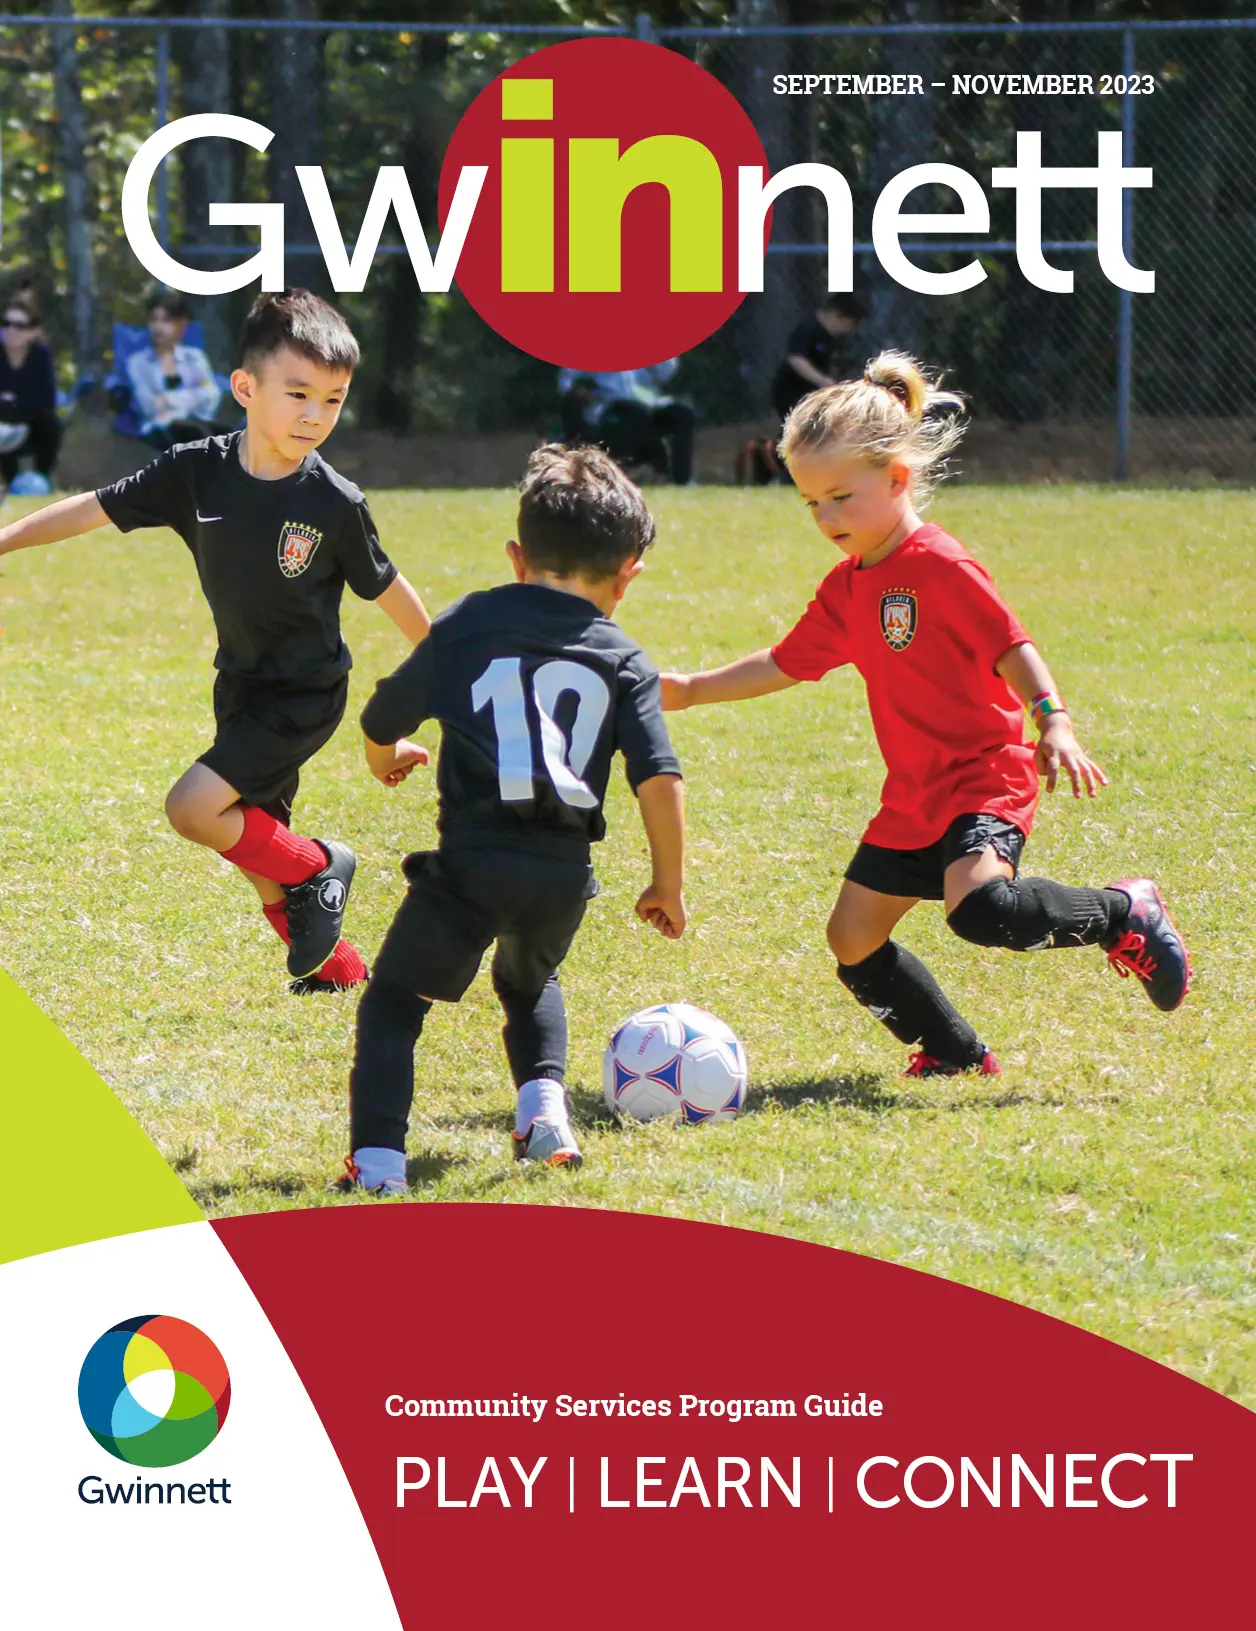 InGwinnett Sept 2023- November 2023 cover image.